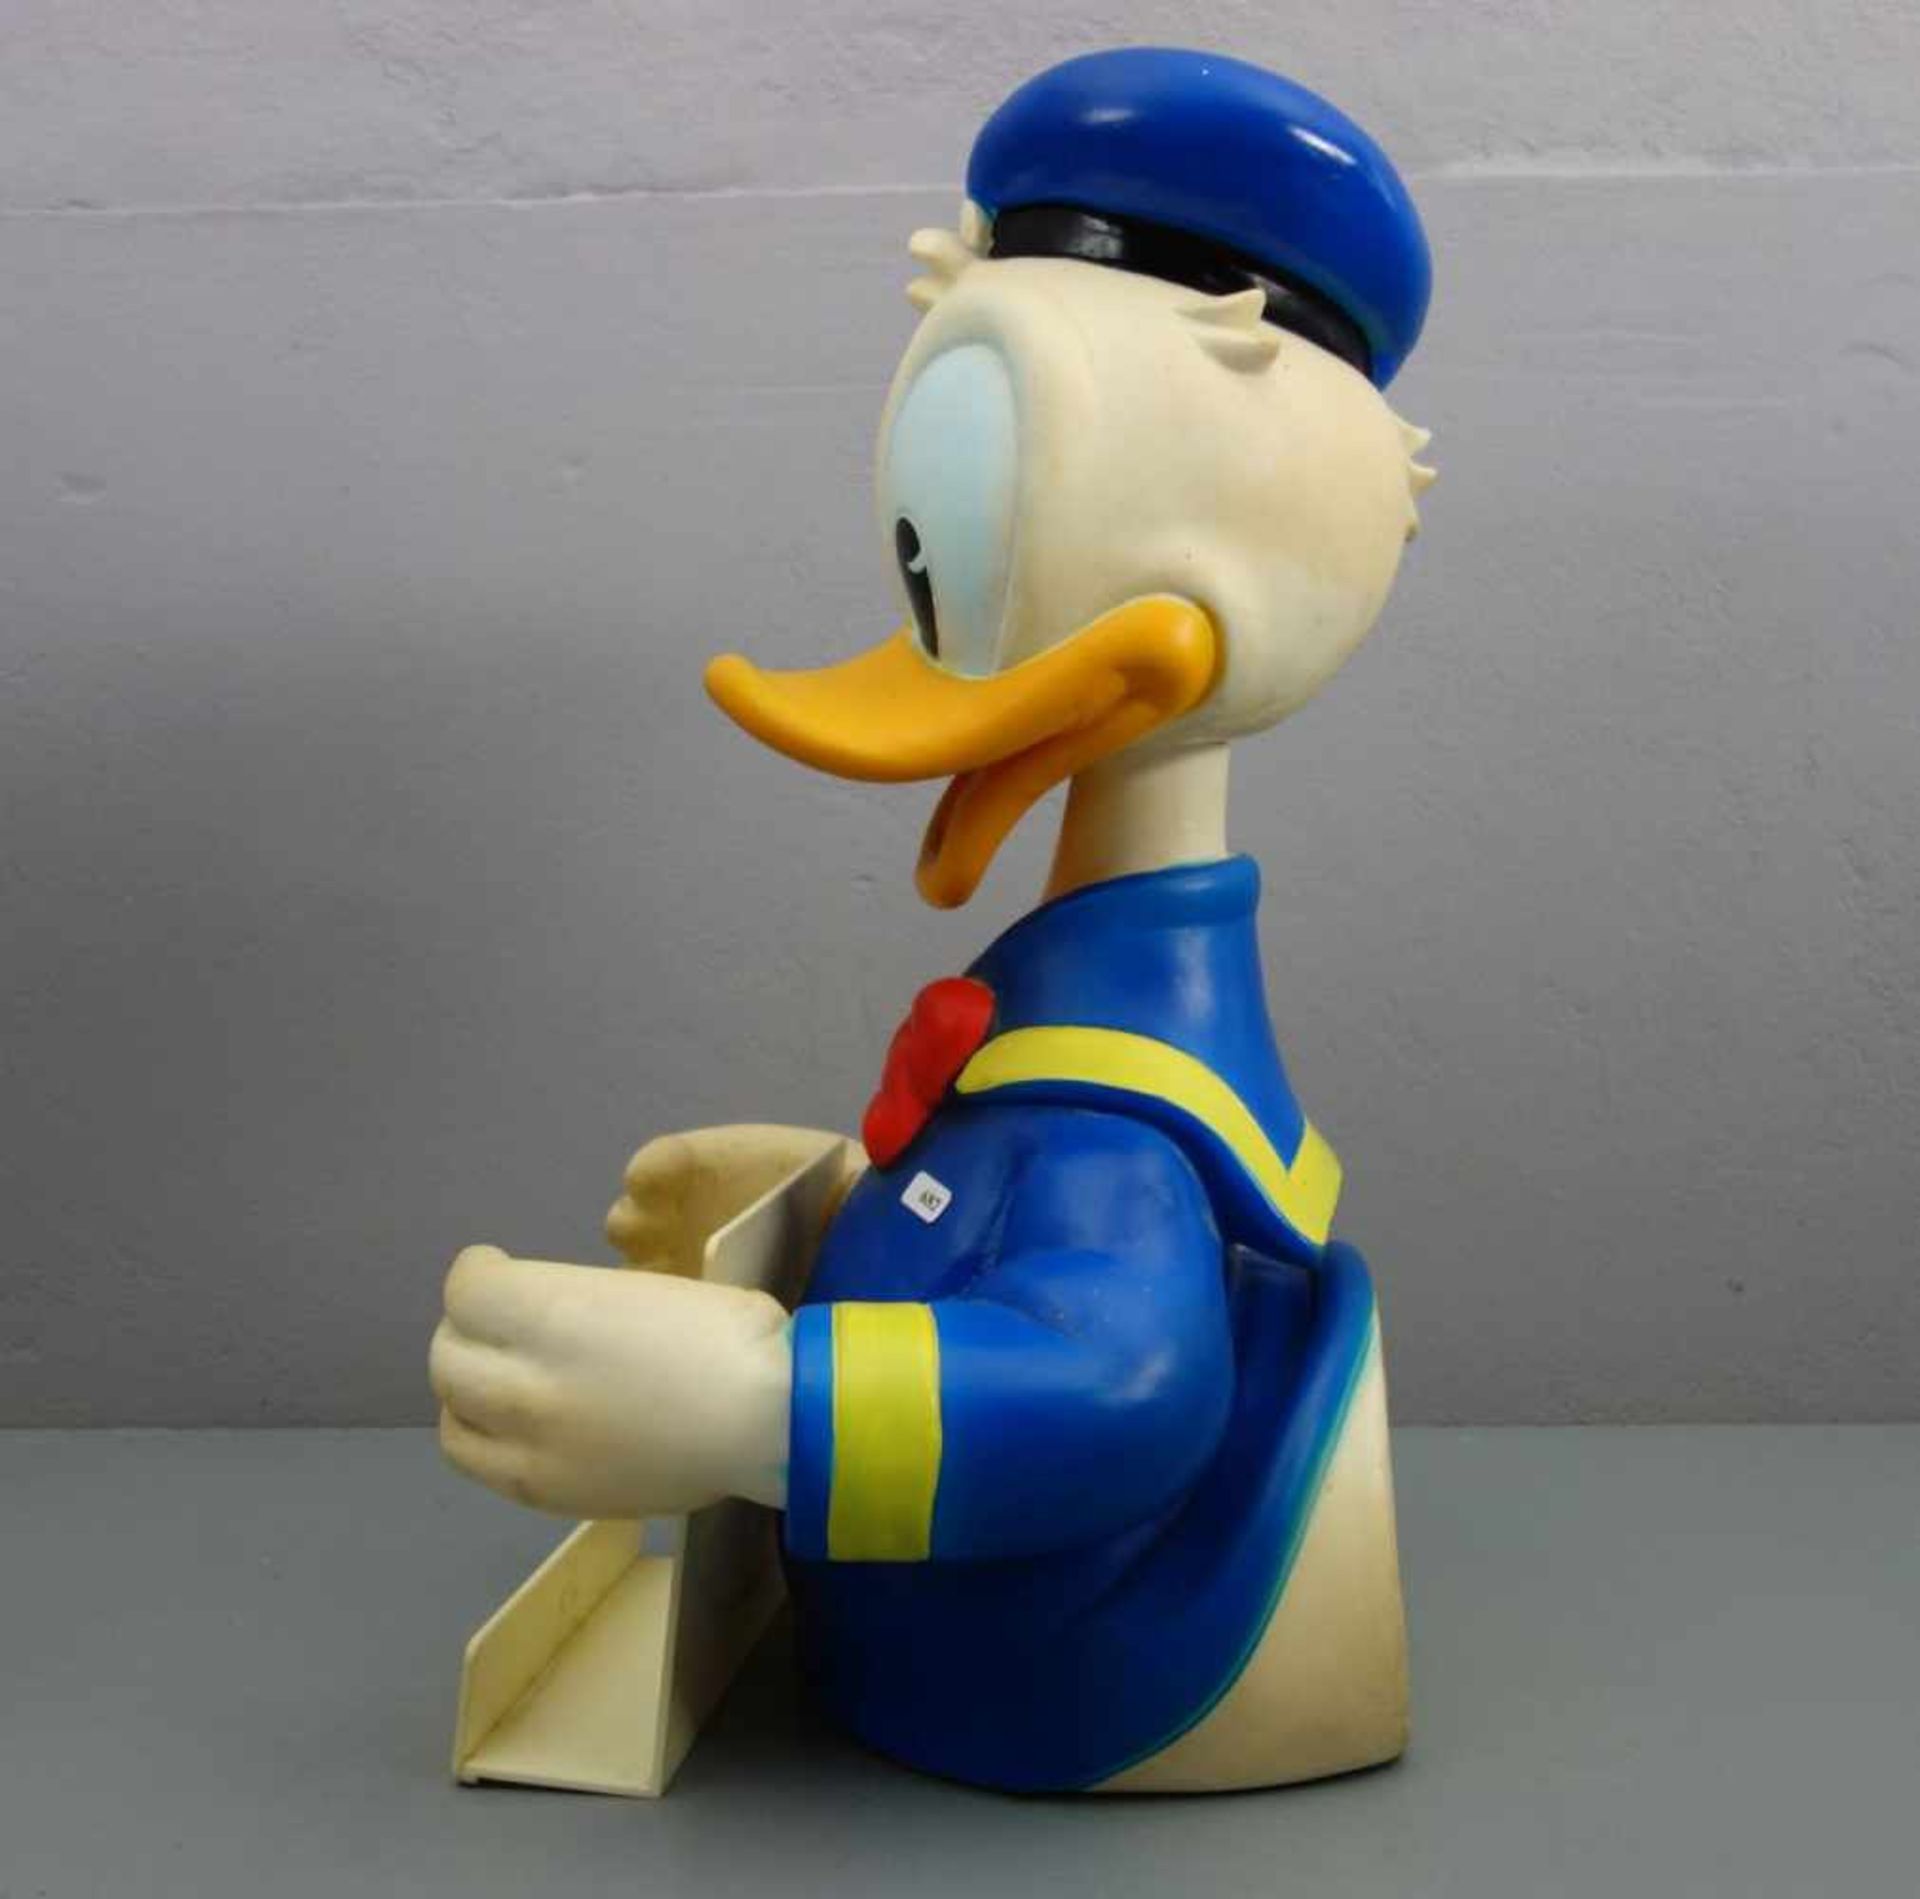 WALT DISNEY - WERBEAUFSTELLER / MERCHANDISE "Donald Duck", Thermoplastik, farbig gefasst. - Bild 4 aus 4